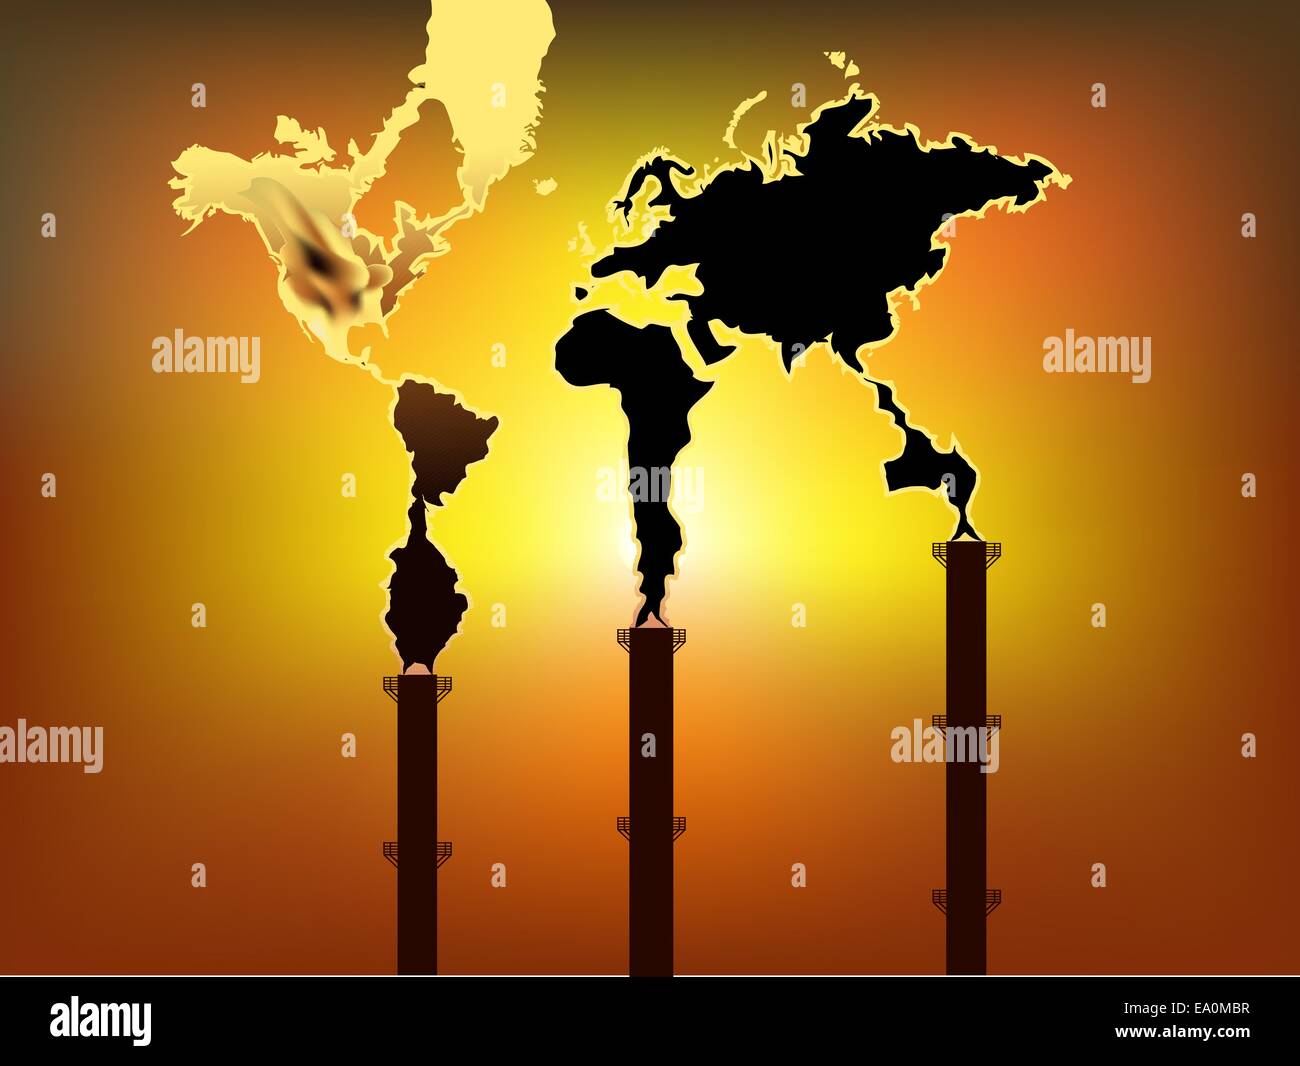 La fumée en forme de carte du monde prends forme cheminée d'usine Illustration de Vecteur